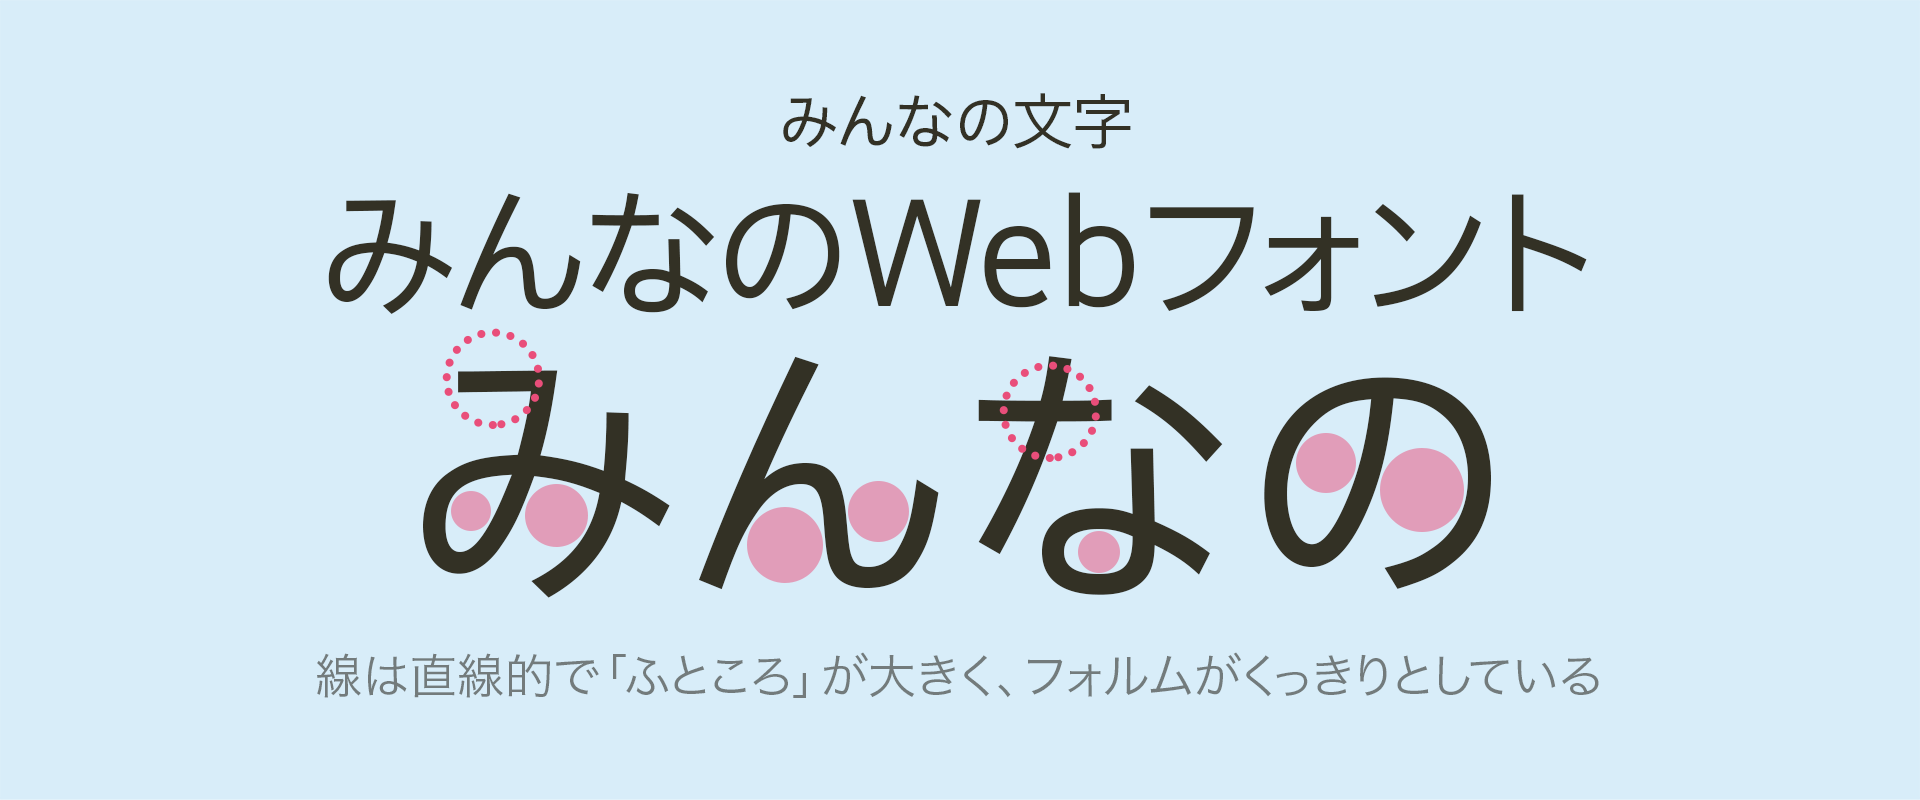 商用利用可能 高品質なオススメ日本語webフォント10選 無料フォント多数 Ics Media